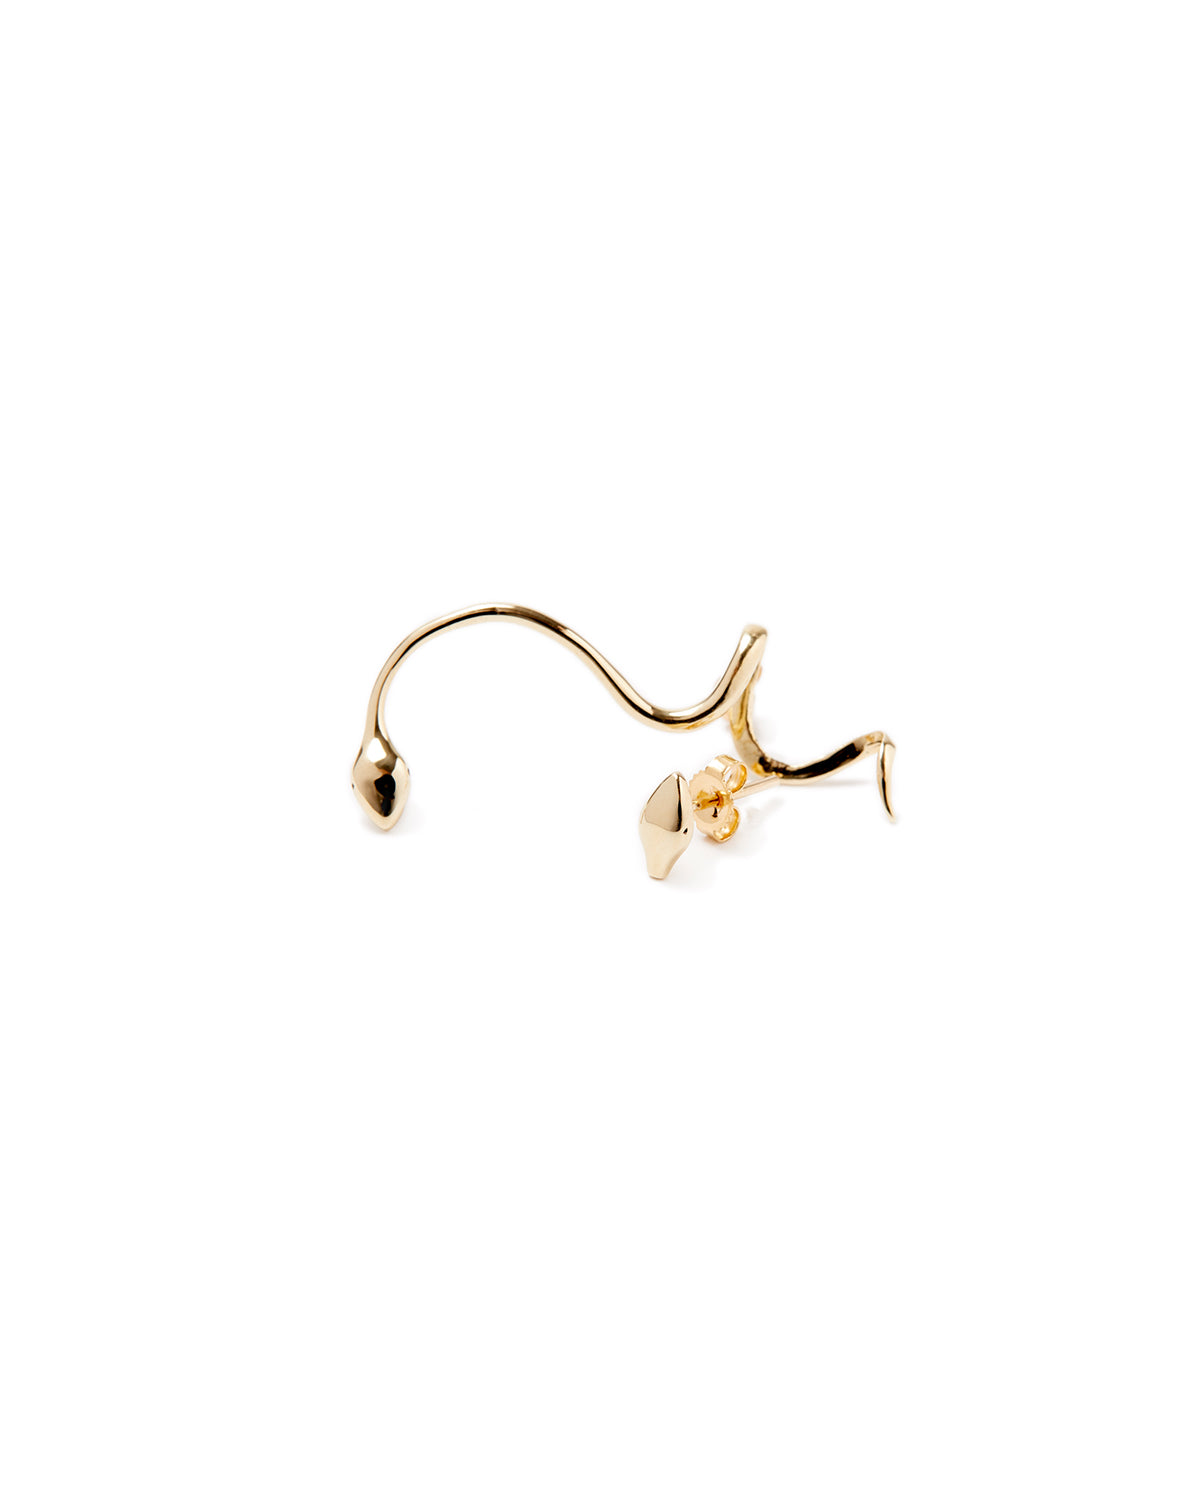 Serpent gold earring